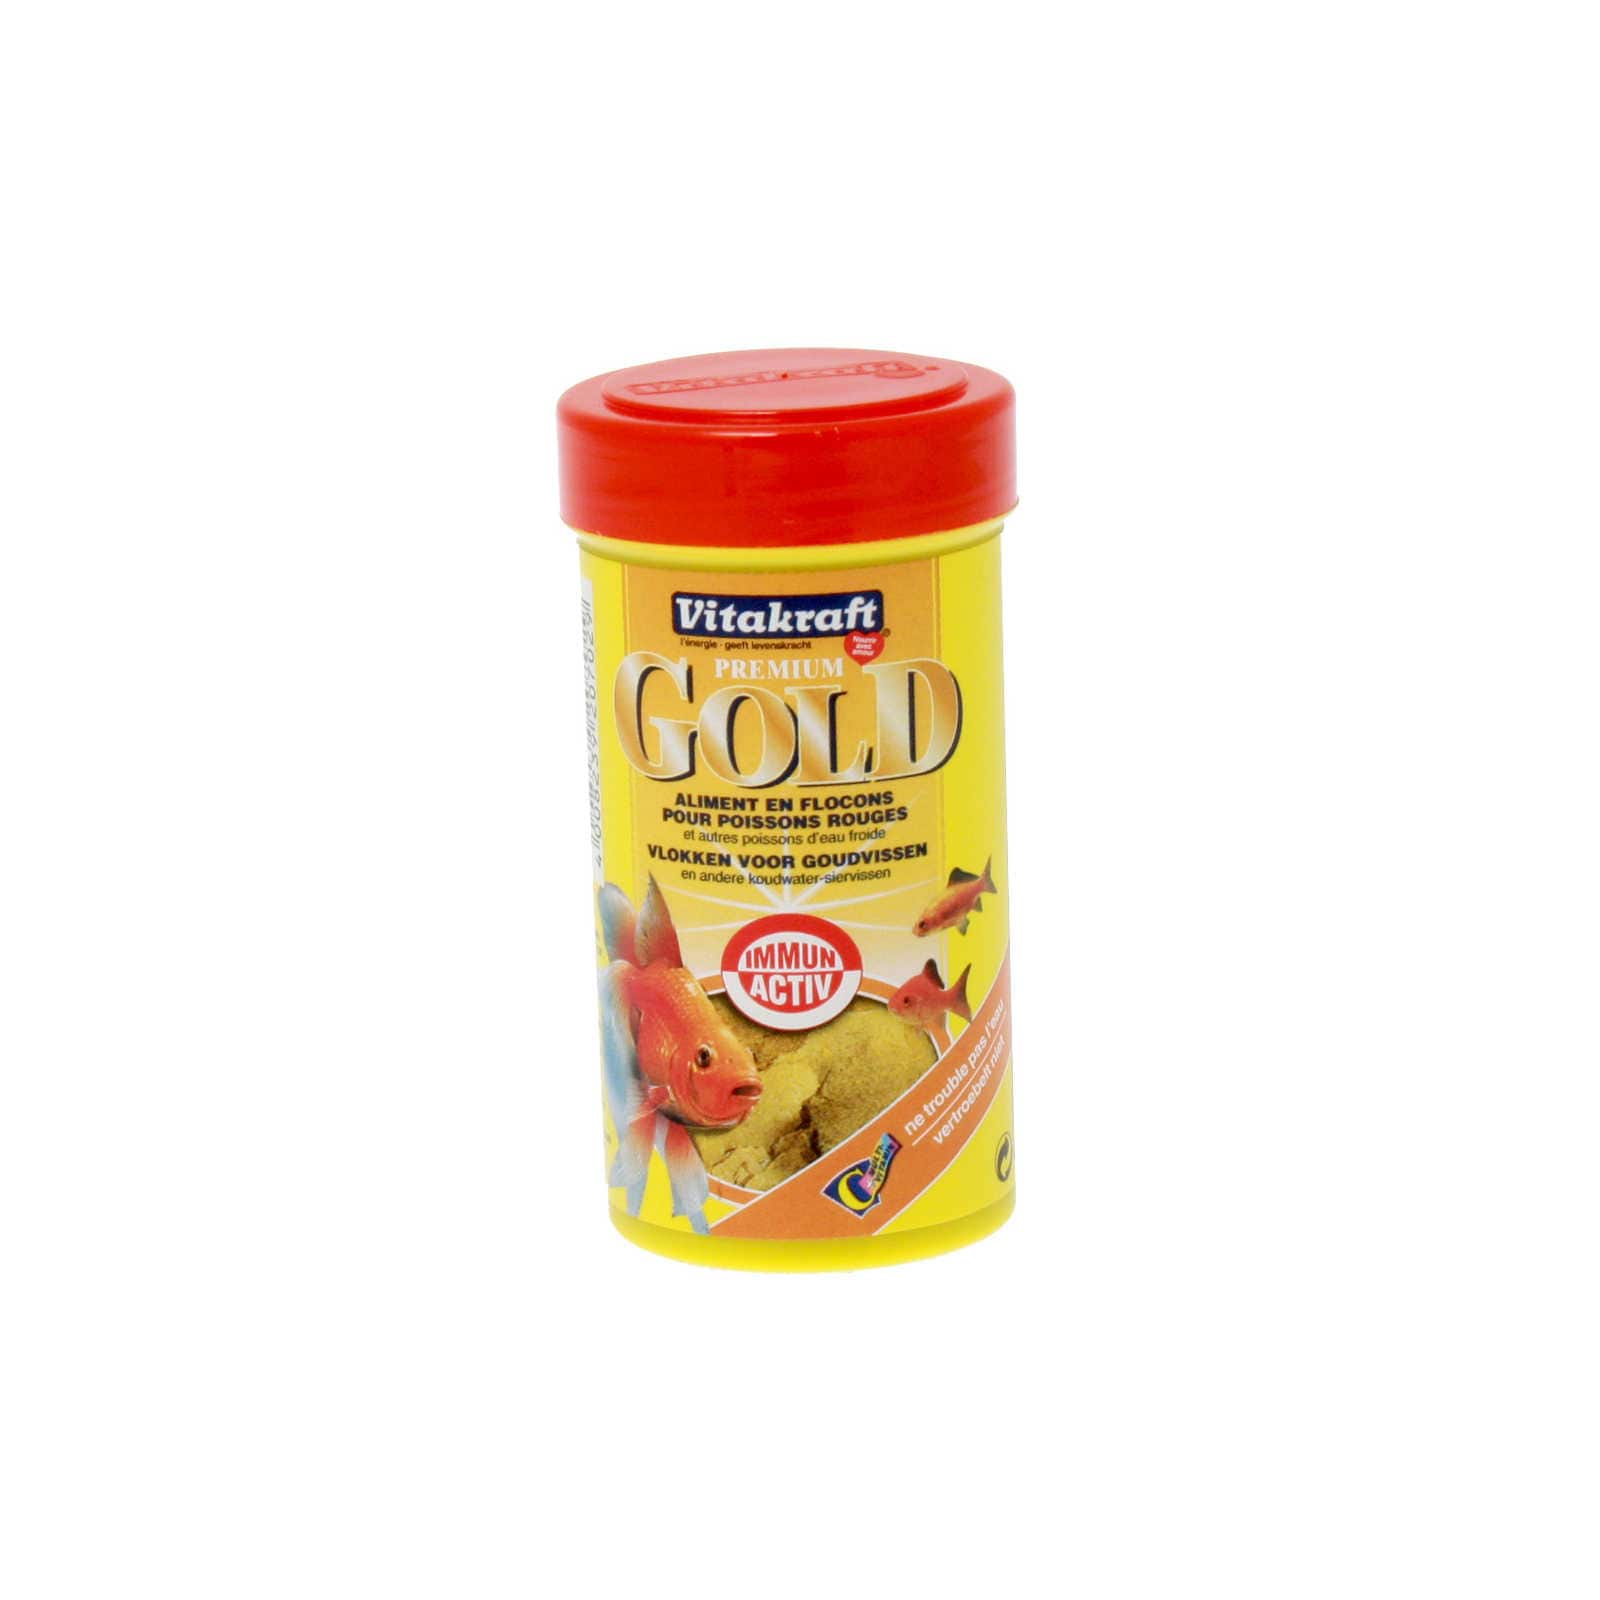 GOLD Flake-Mix aliment en flocons - Vitakraft